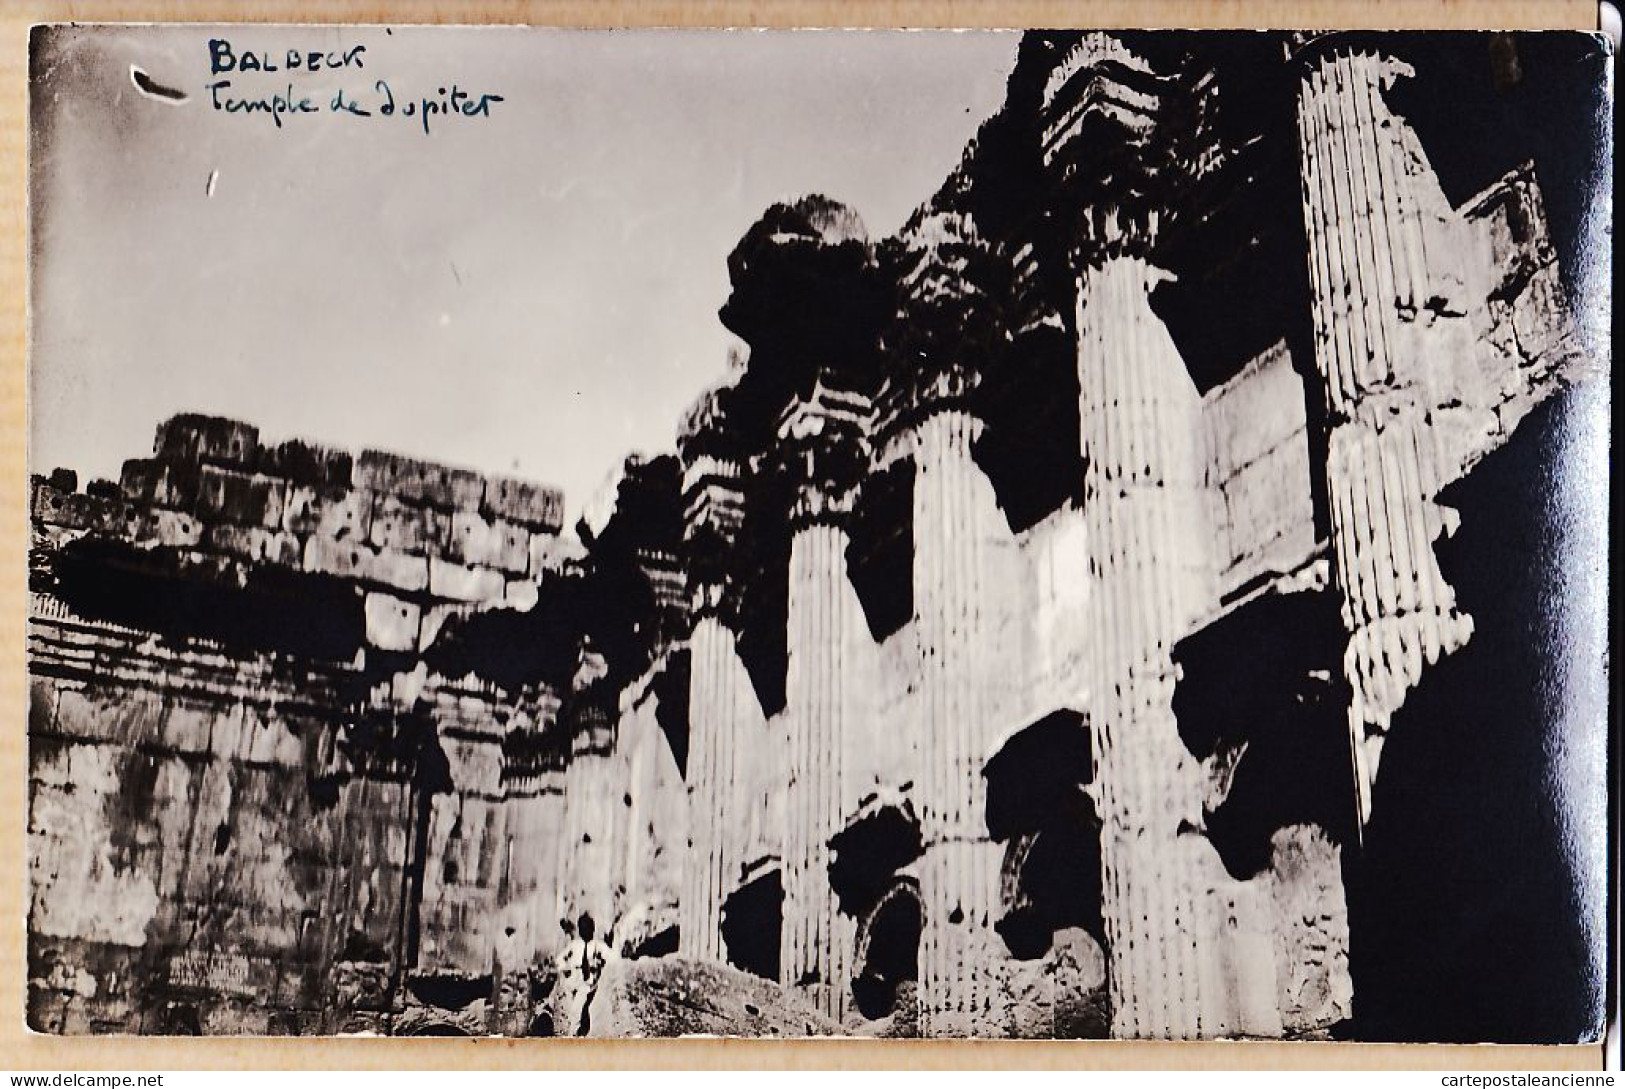 01814 / Rare Carte-Photo 1920s BALBECK Liban Temple De JUPITER Ruines Gréco-romaines-Lebanon Baalbek - Lebanon